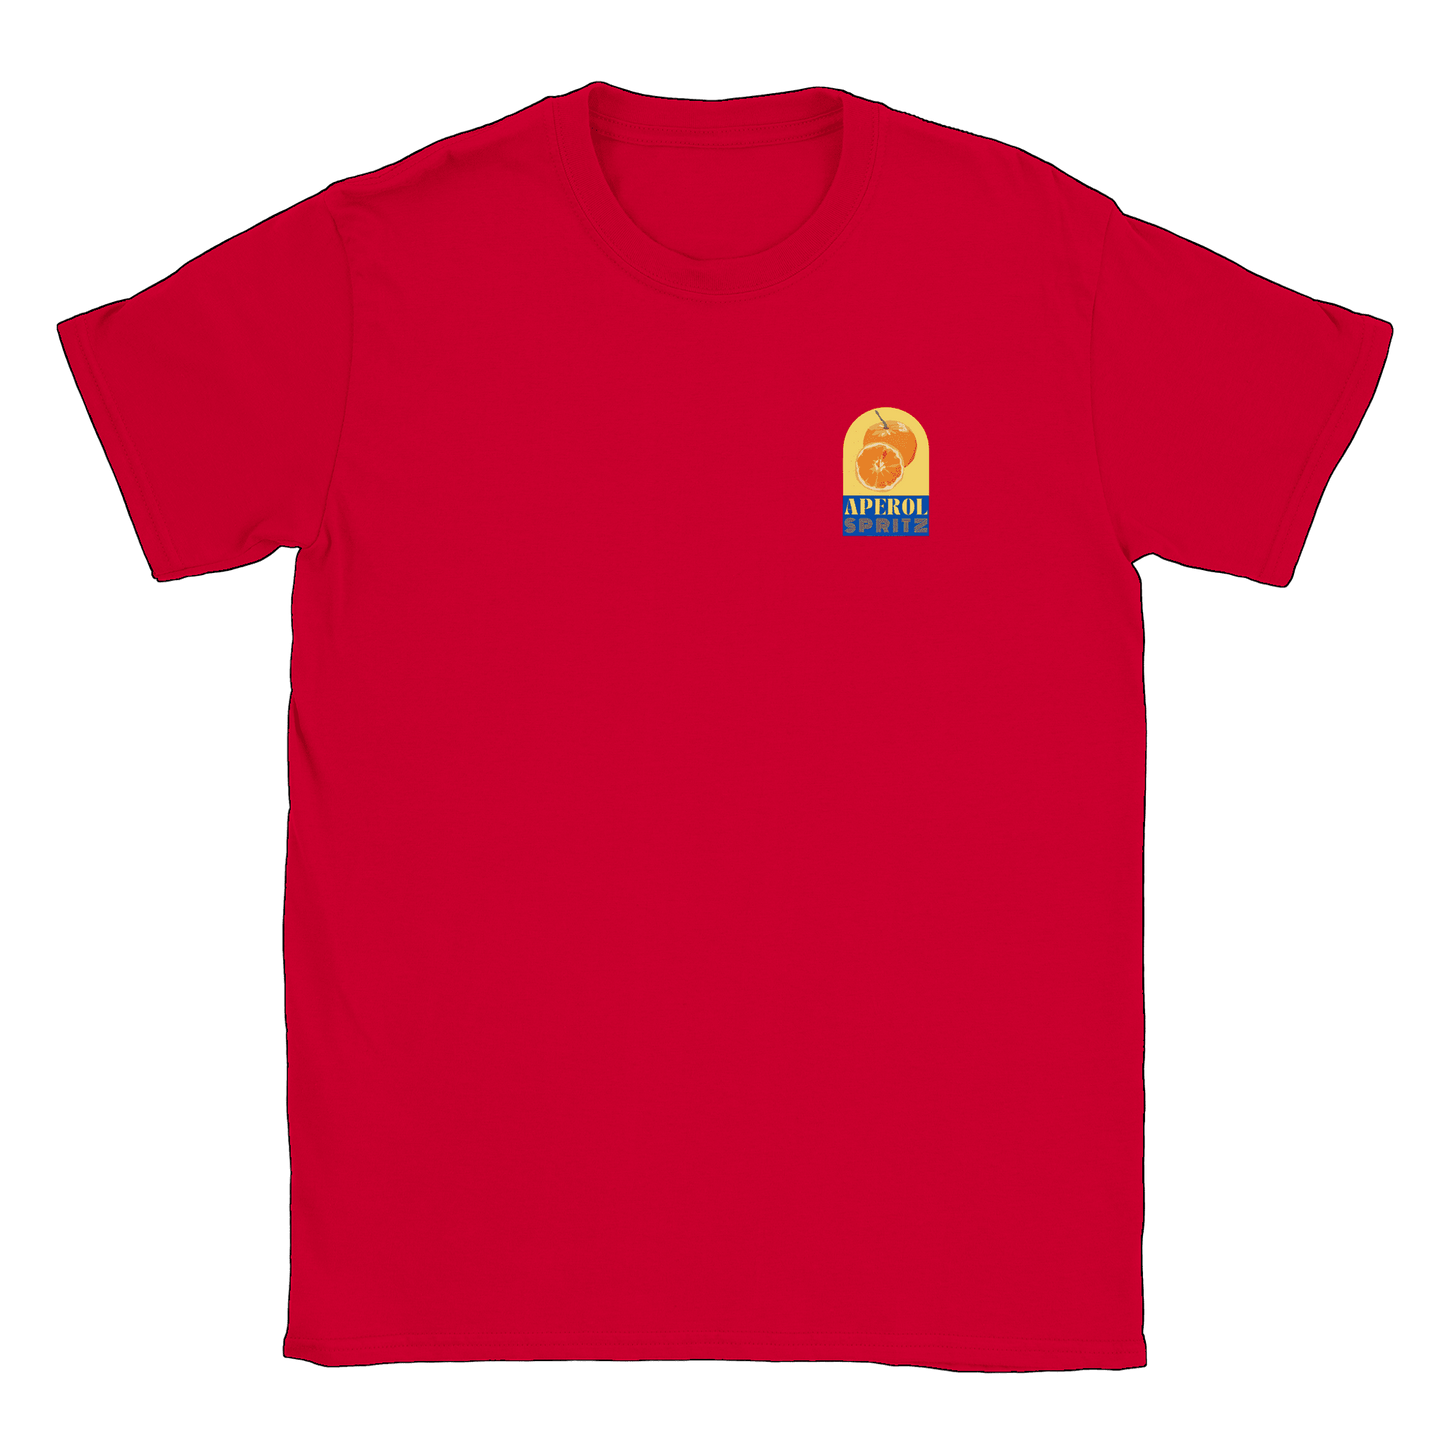 Aperol Spritz litet tryck - T-shirt Röd